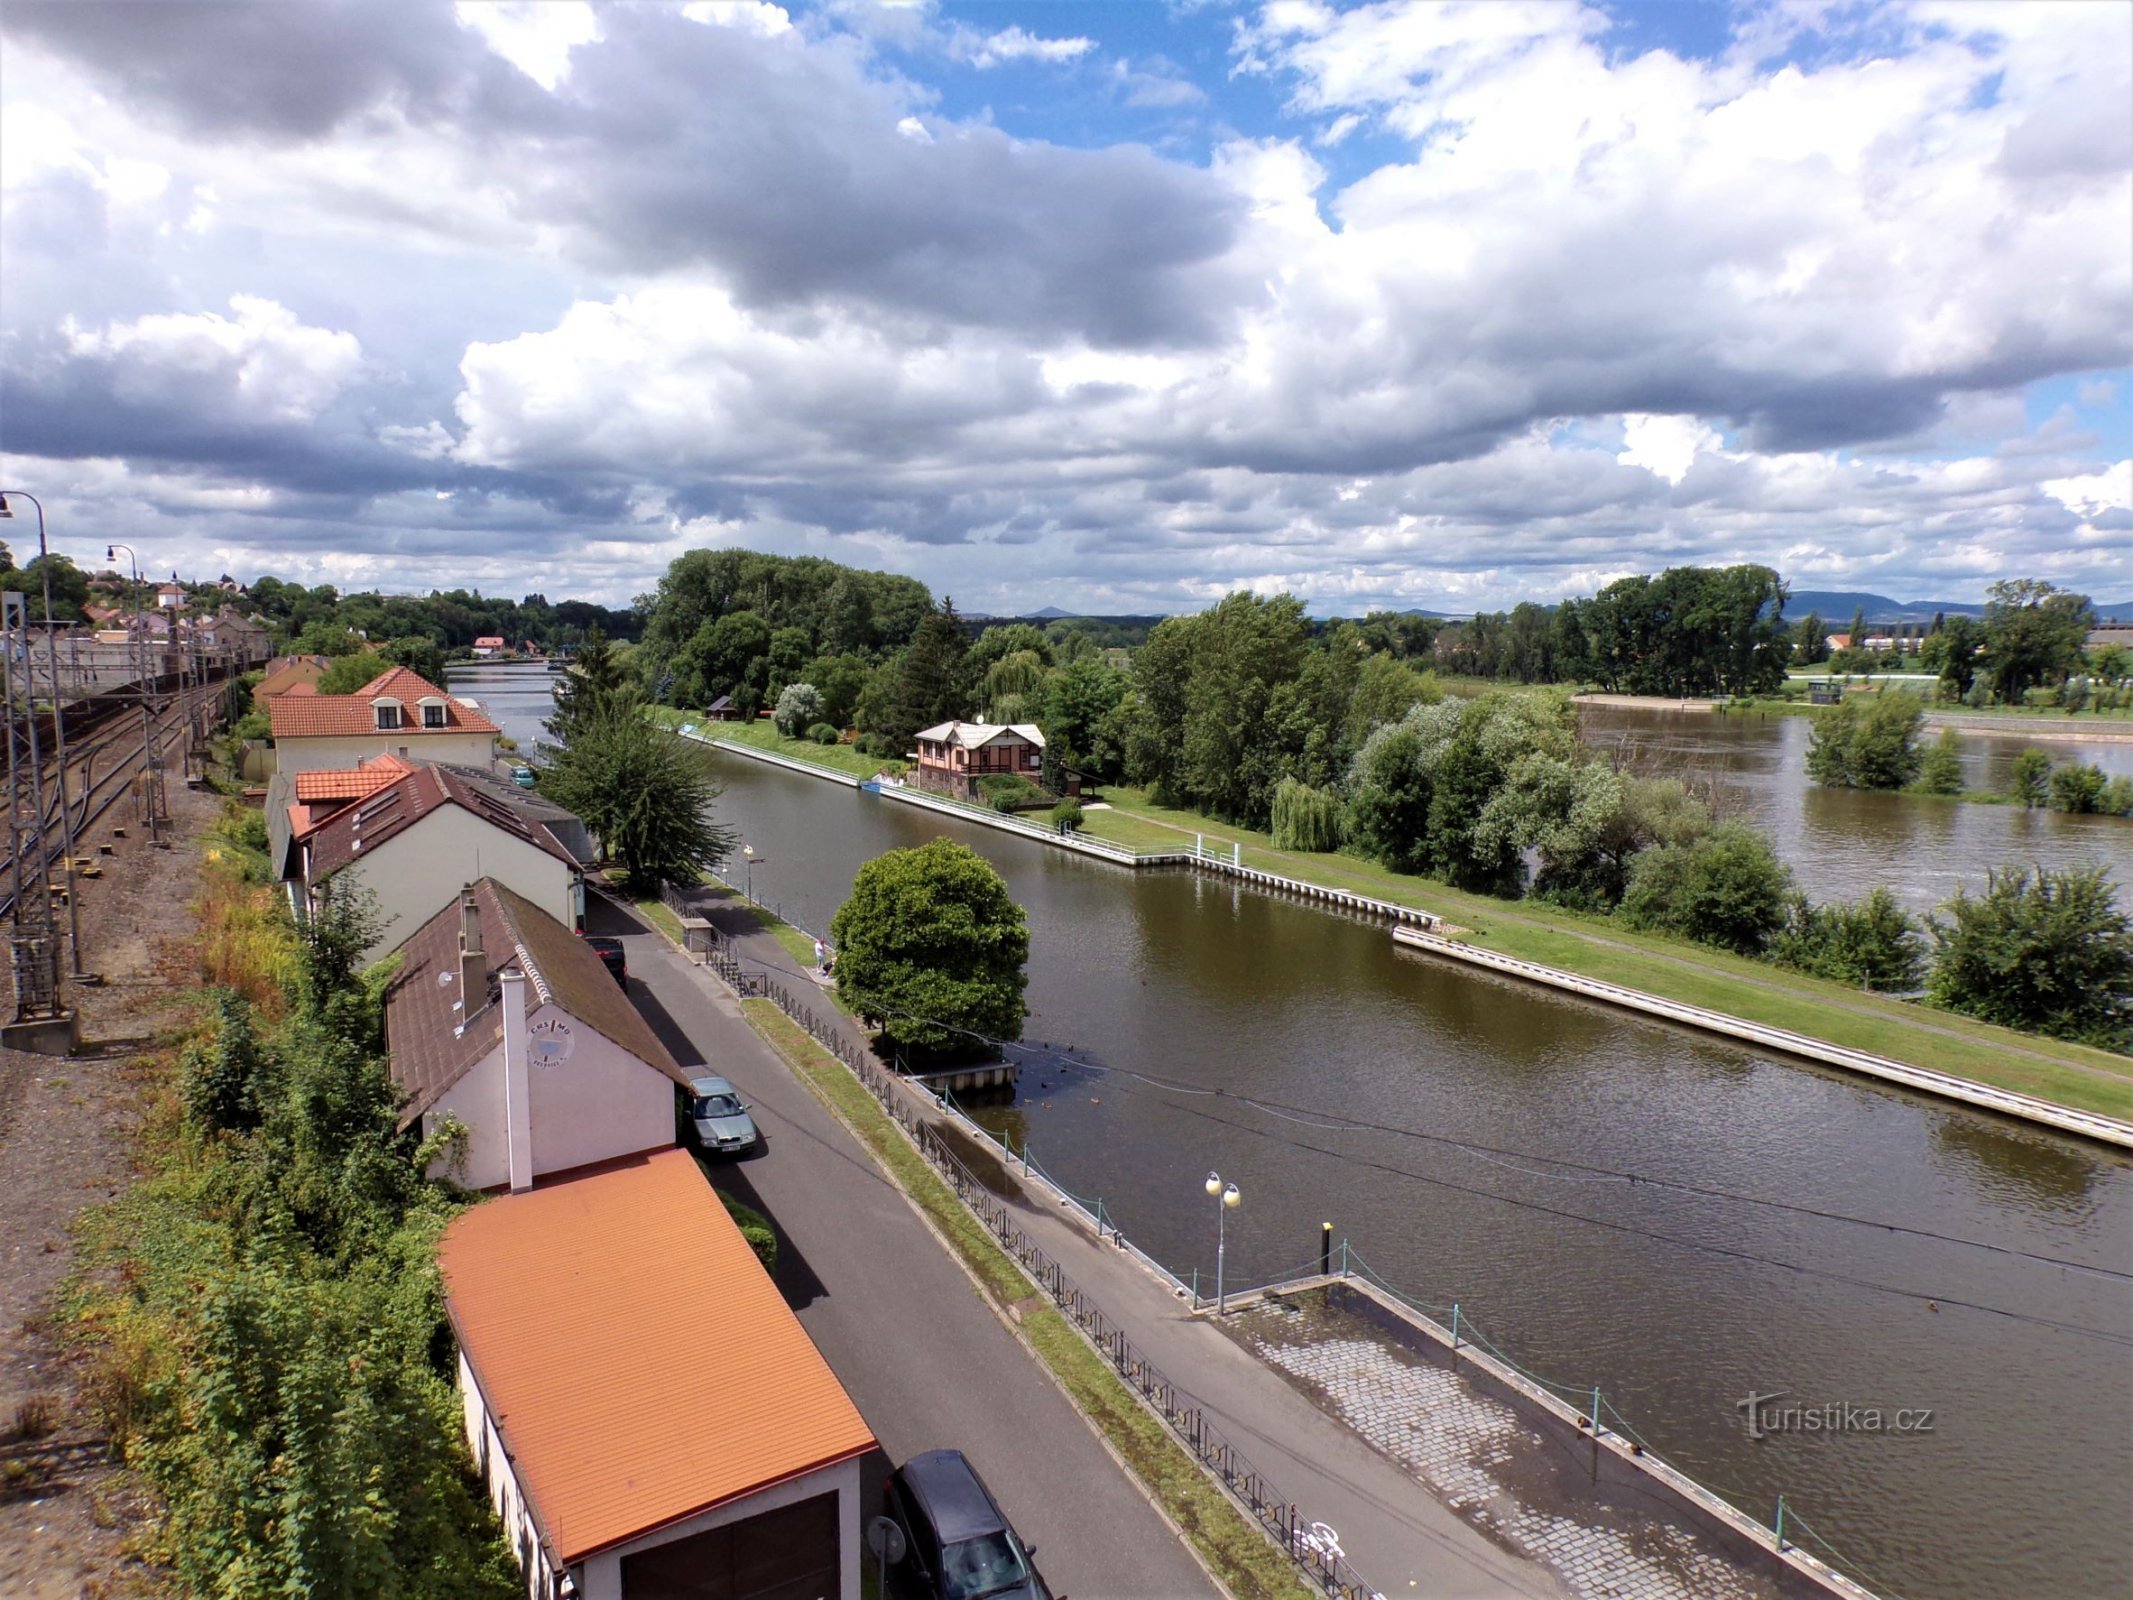 エルヴィン・シュピンドラー橋からの島の眺め (Roudnice nad Labem、9.7.2021 年 XNUMX 月 XNUMX 日)